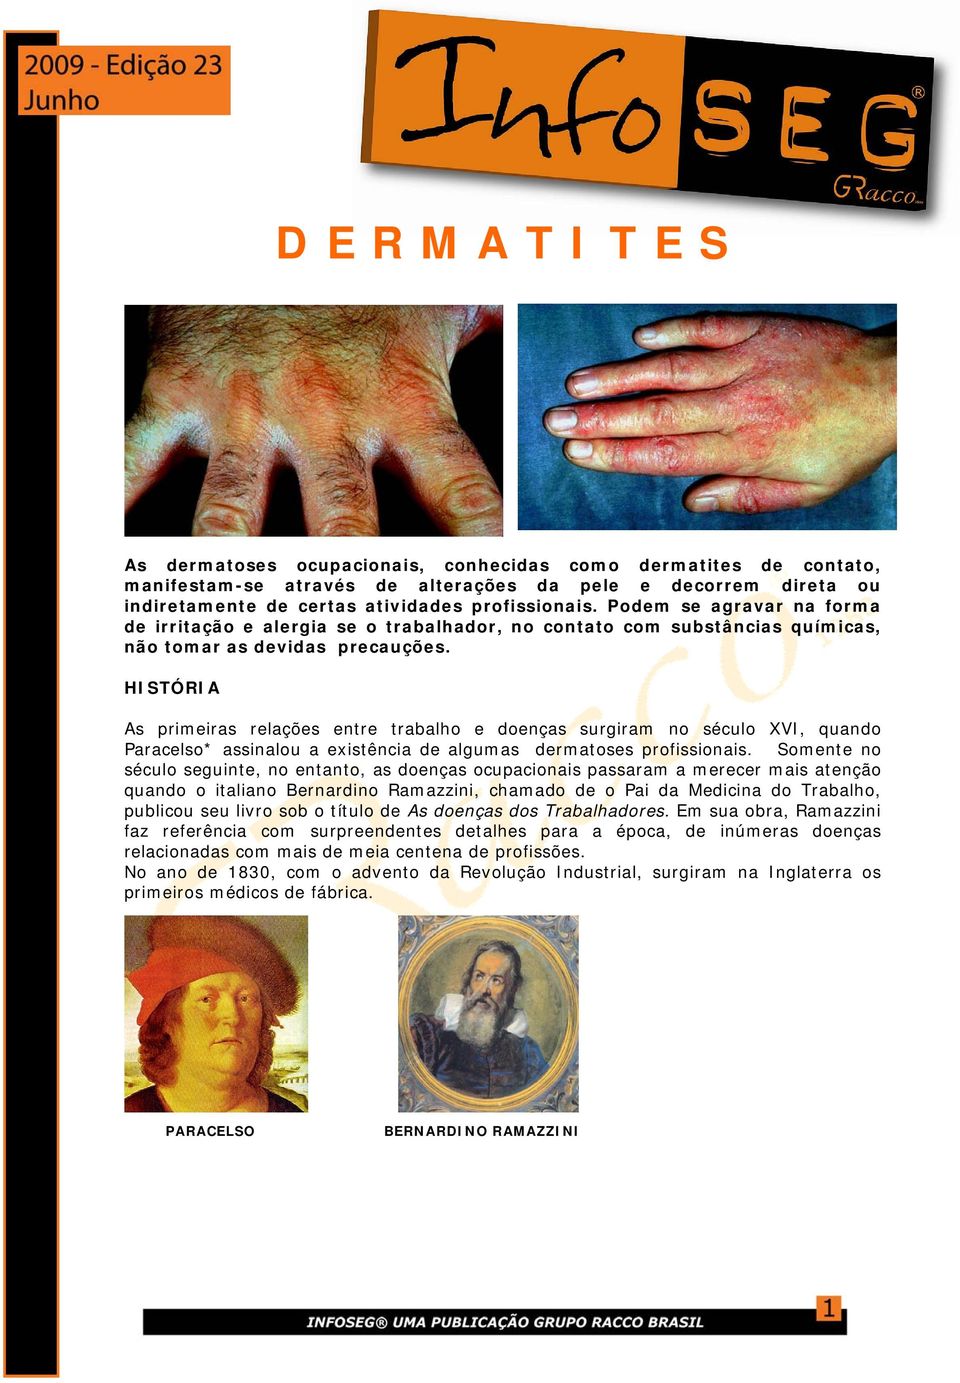 HISTÓRIA As primeiras relações entre trabalho e doenças surgiram no século XVI, quando Paracelso* assinalou a existência de algumas dermatoses profissionais.